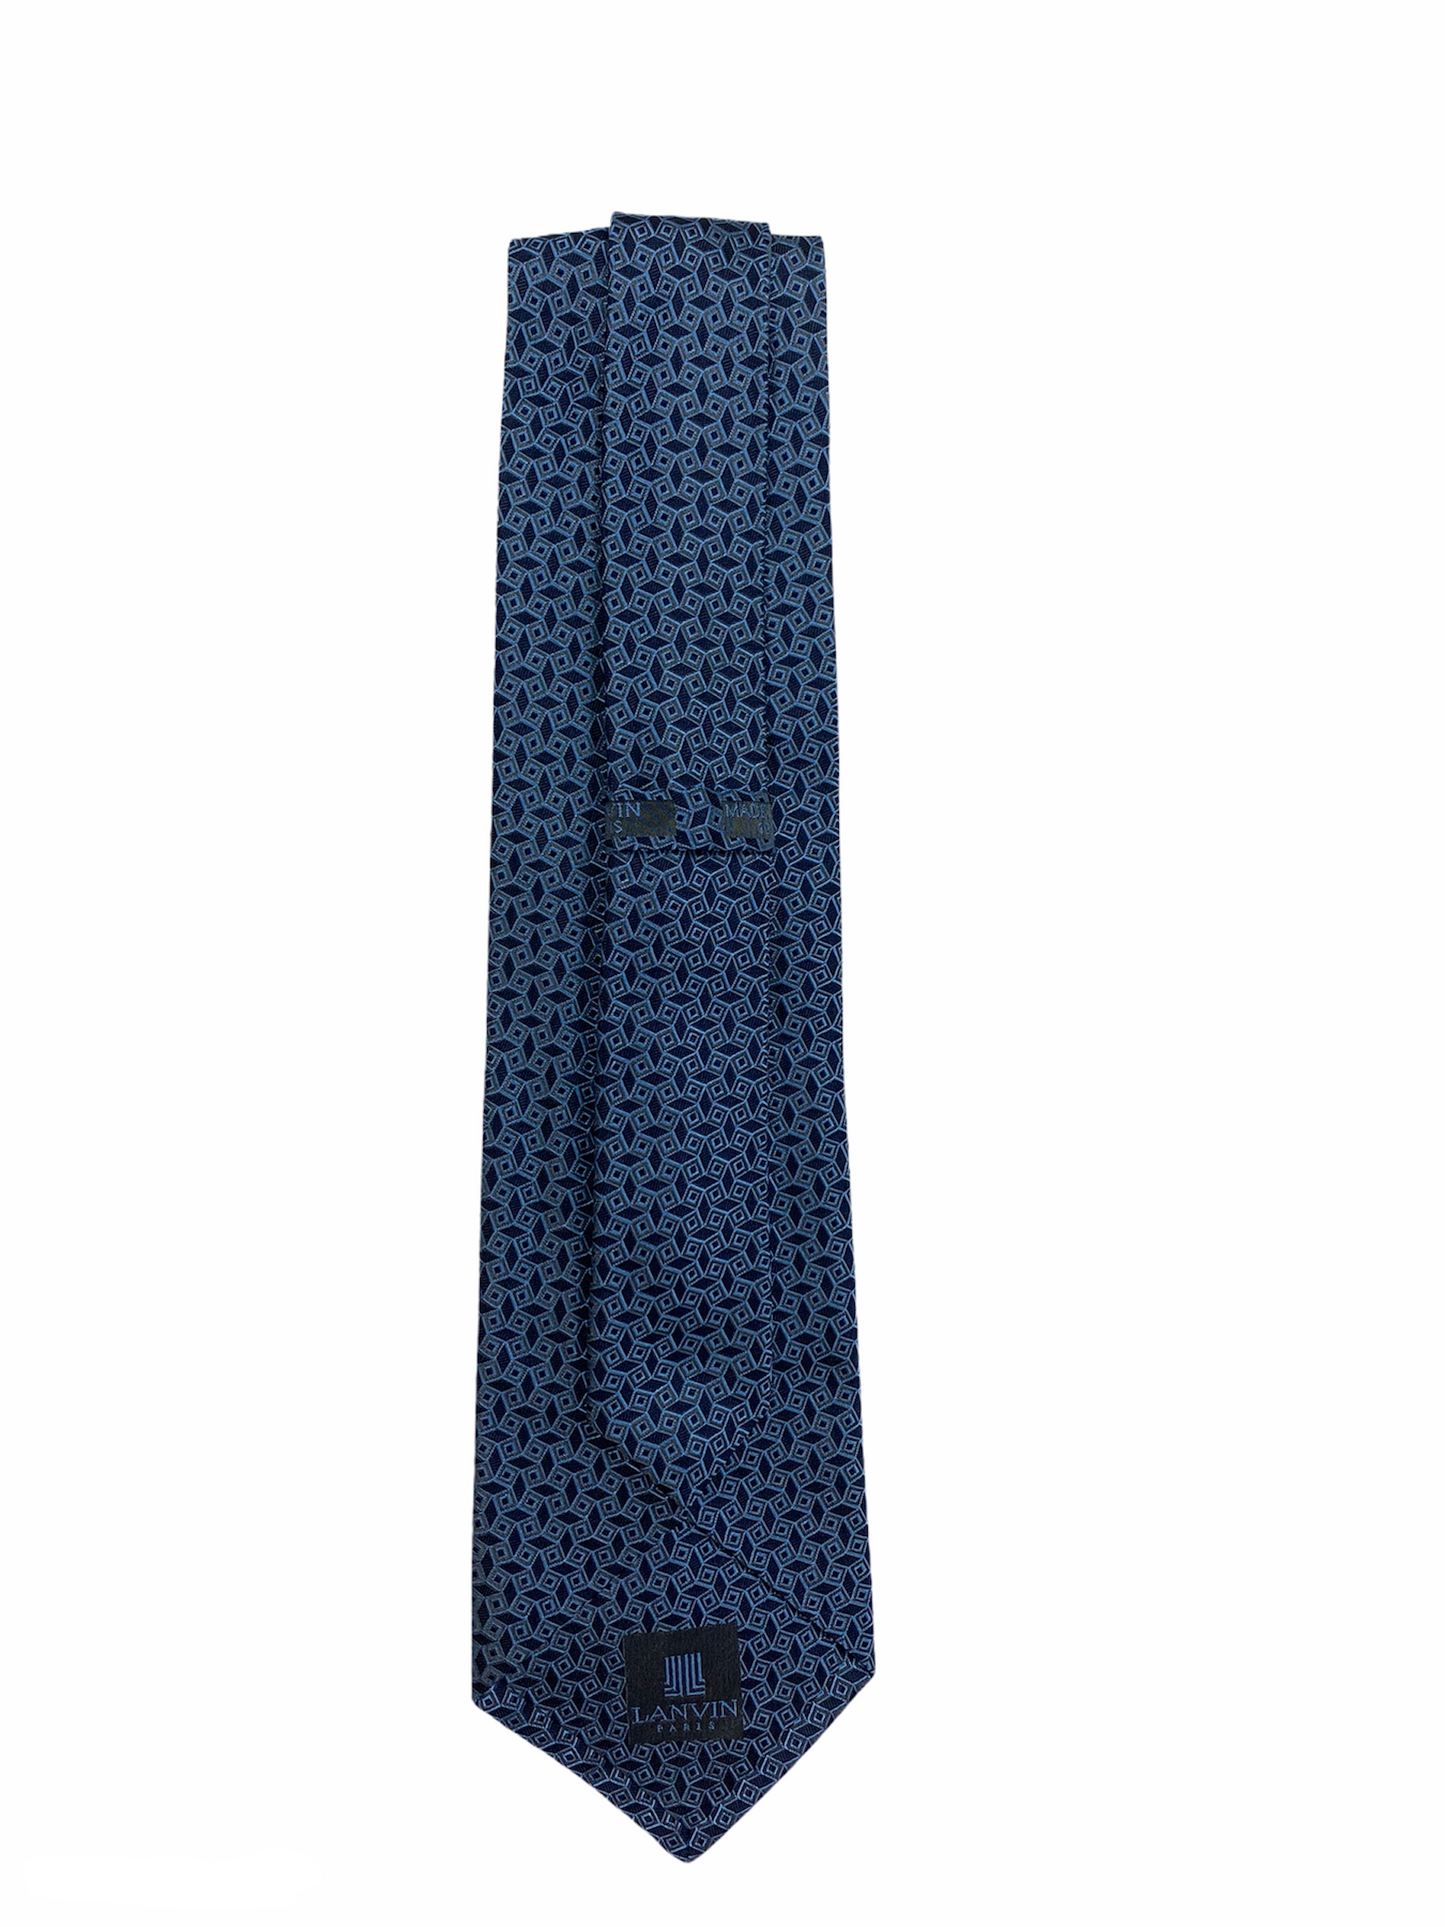 Cravate Lanvin bleu